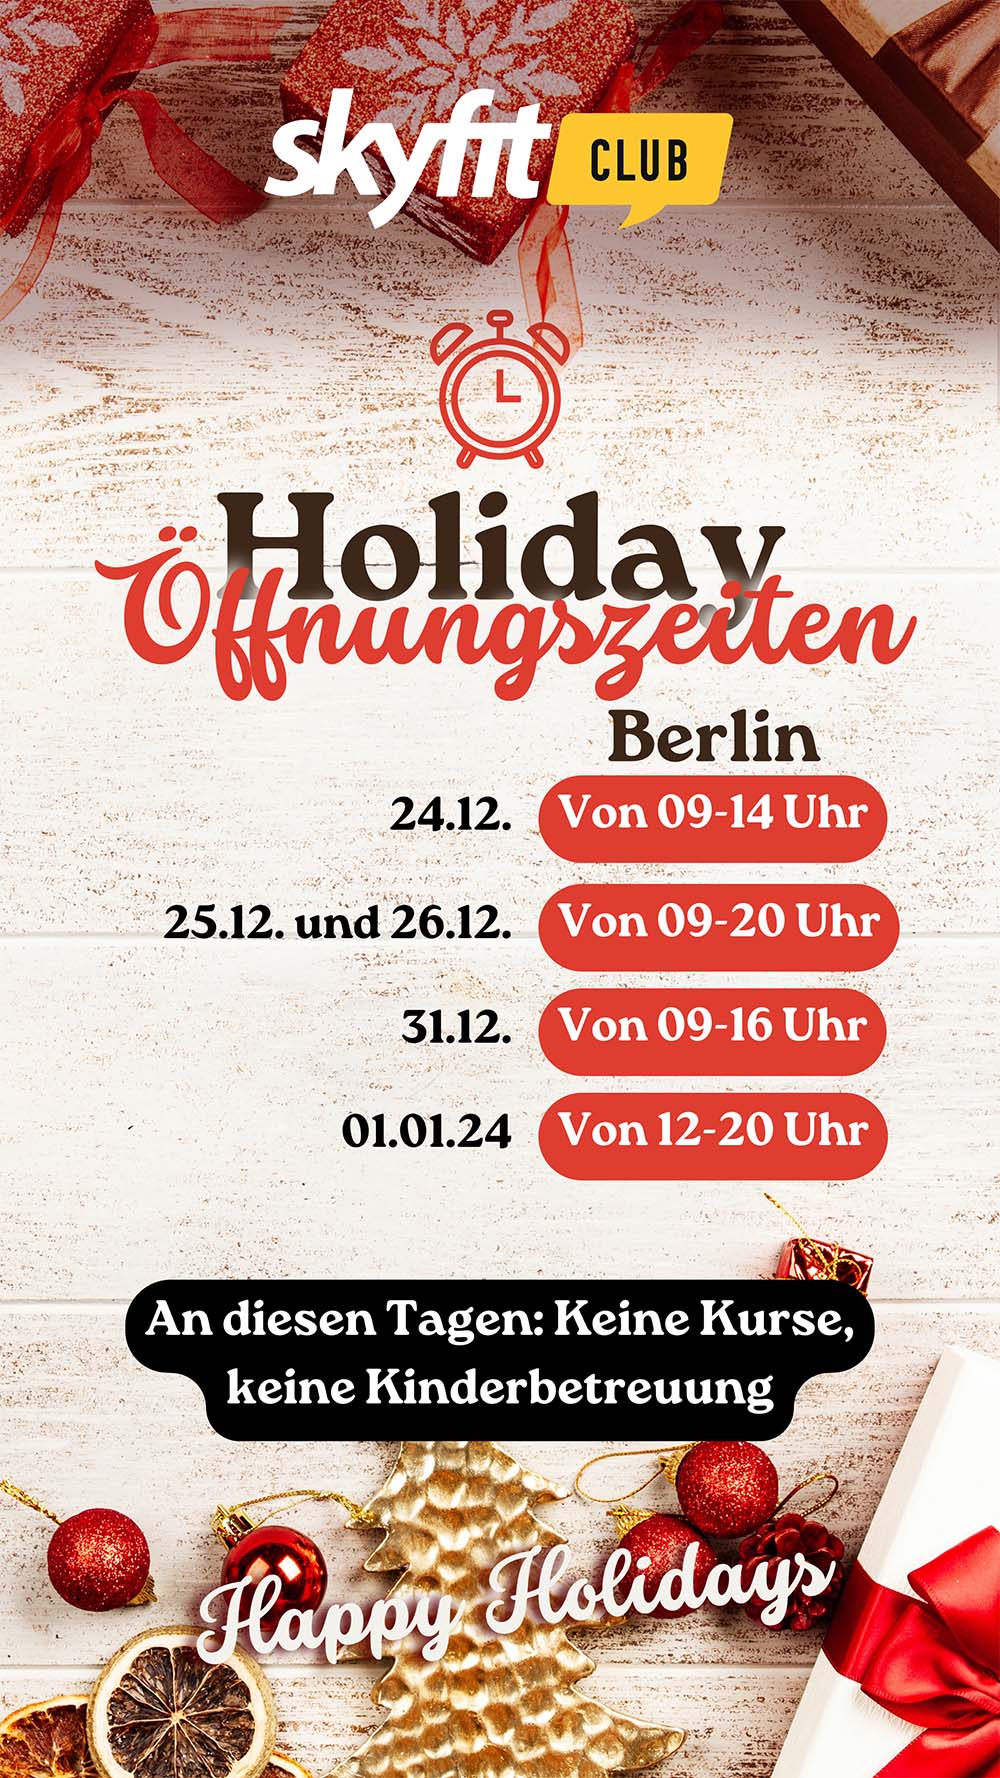 Zeiten Holiday berlin - skyfit-Club das begeisternde Fitnessstudio. Fitness effektiv - Öffnungszeiten Holidays 2023